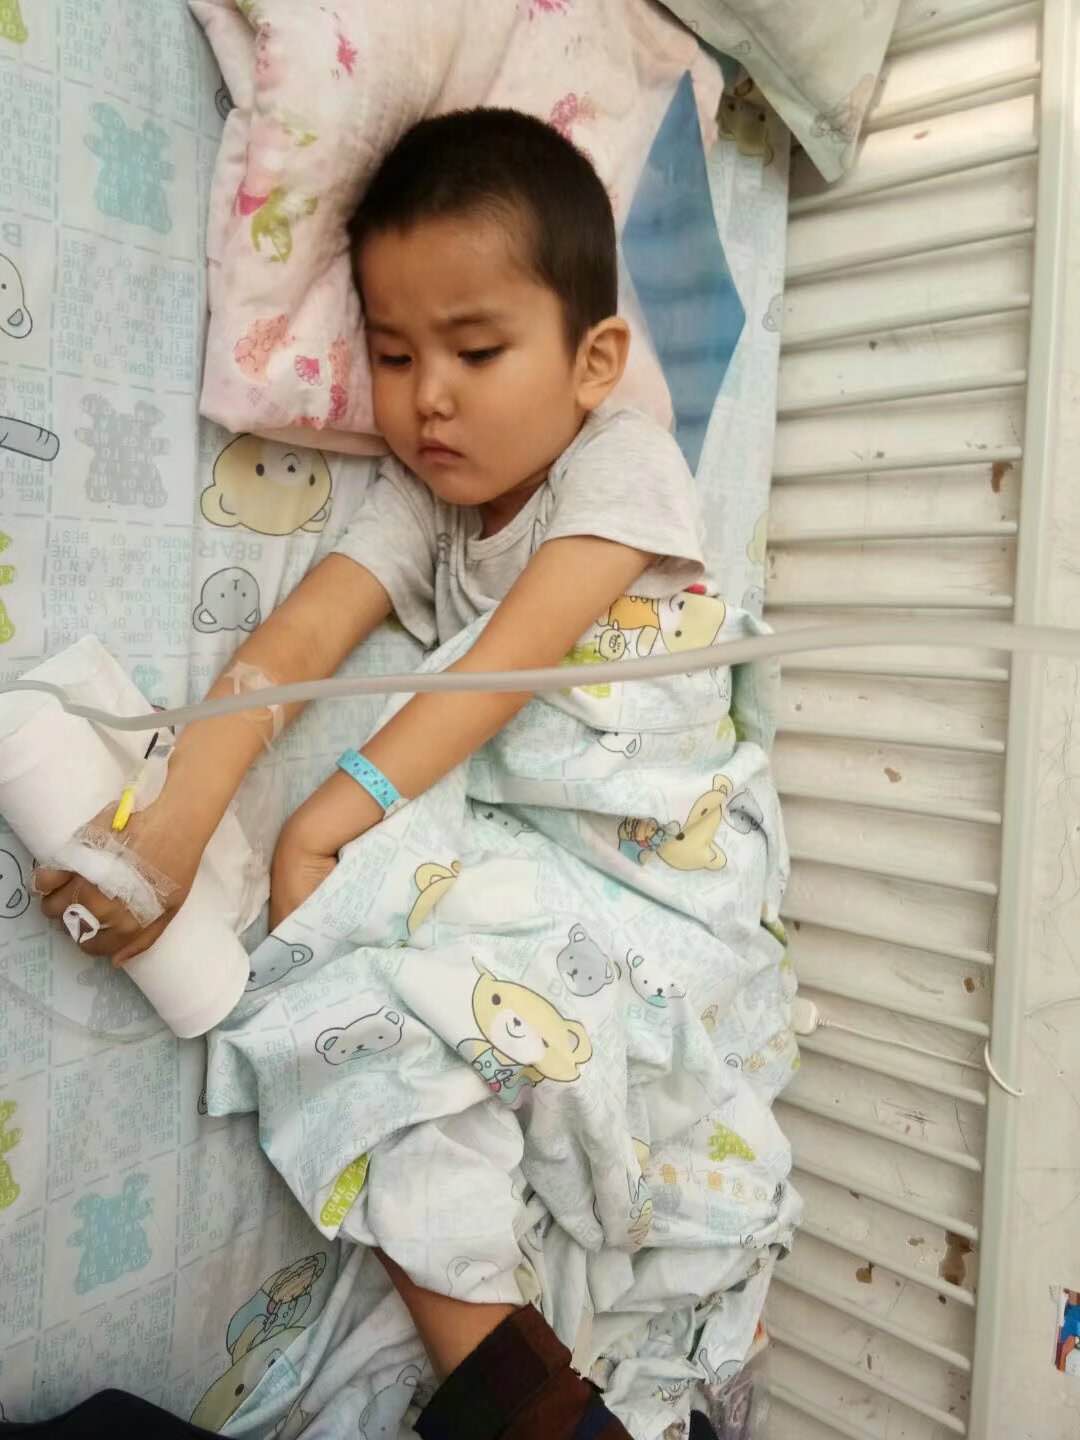 济阳3岁农村宝宝患白血病急需救治,望好心人伸